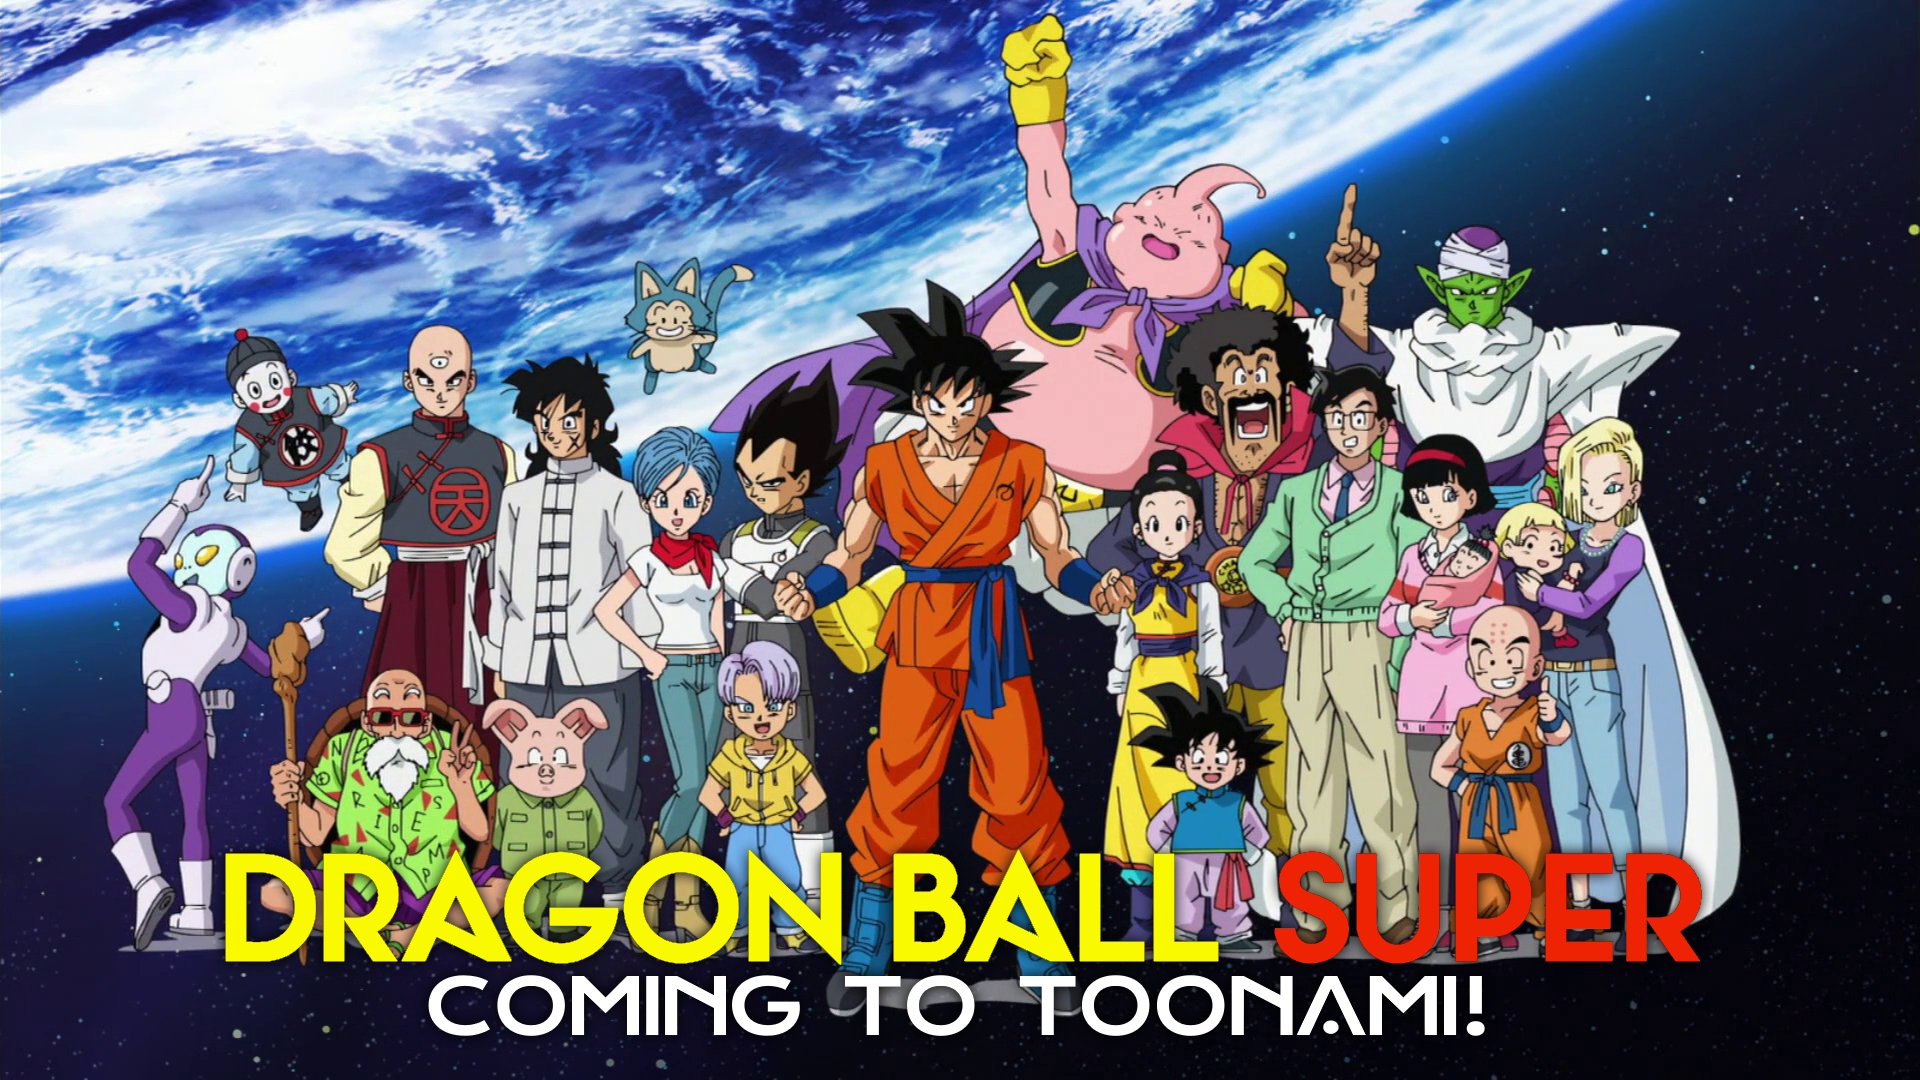 The link between Dragon Ball Daima and the Majin Buu saga hints at